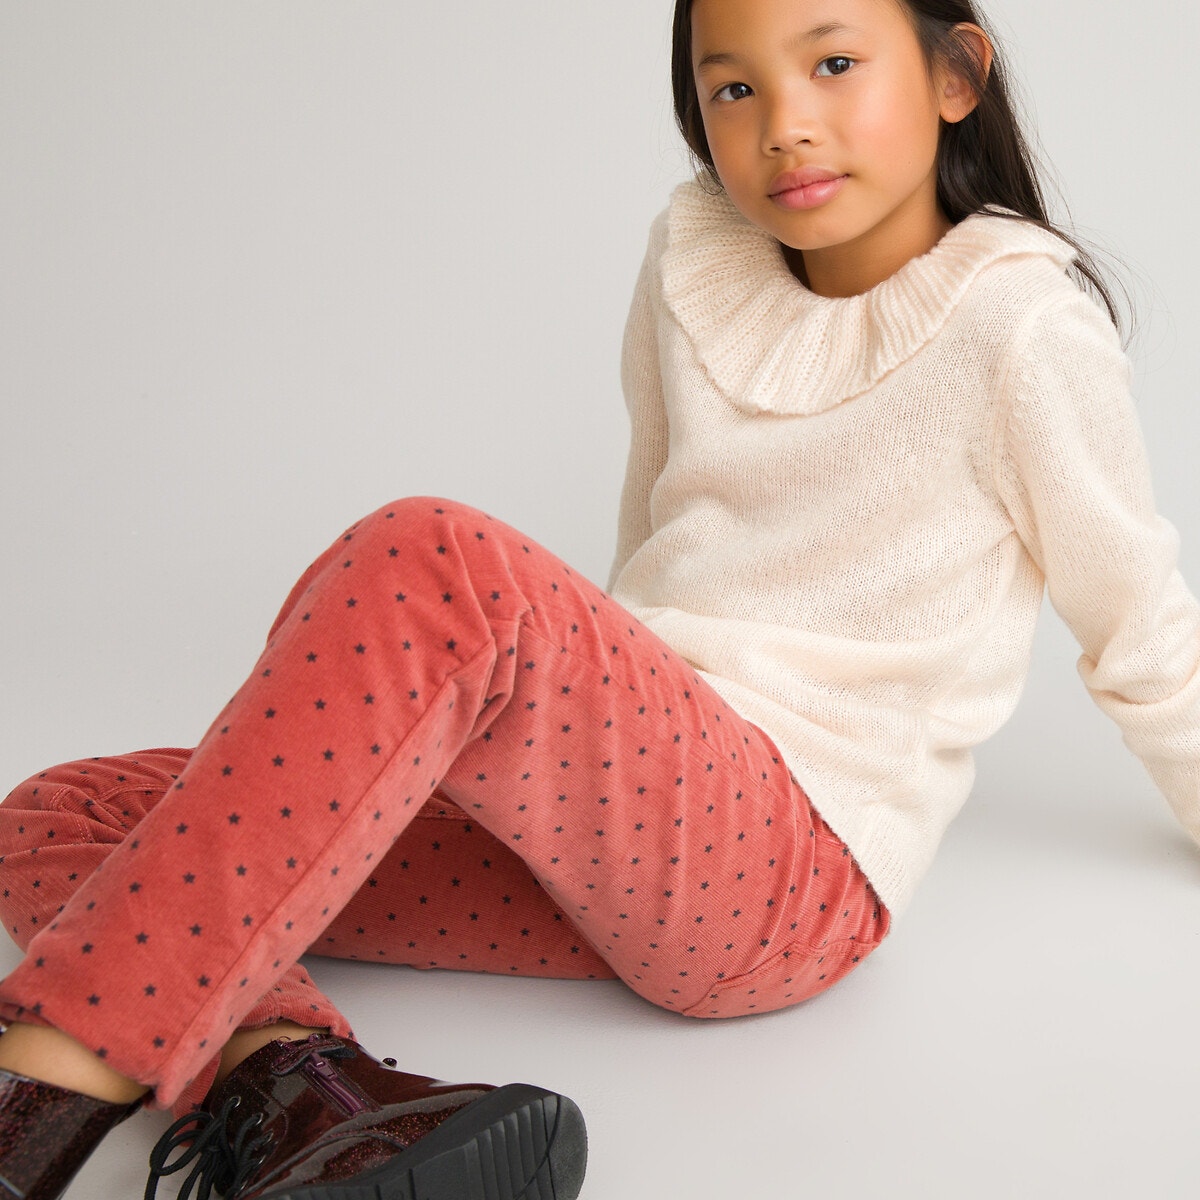 Ελαστικό παντελόνι από βελούδο κοτλέ με μοτίβο αστέρια, 3-12 ετών